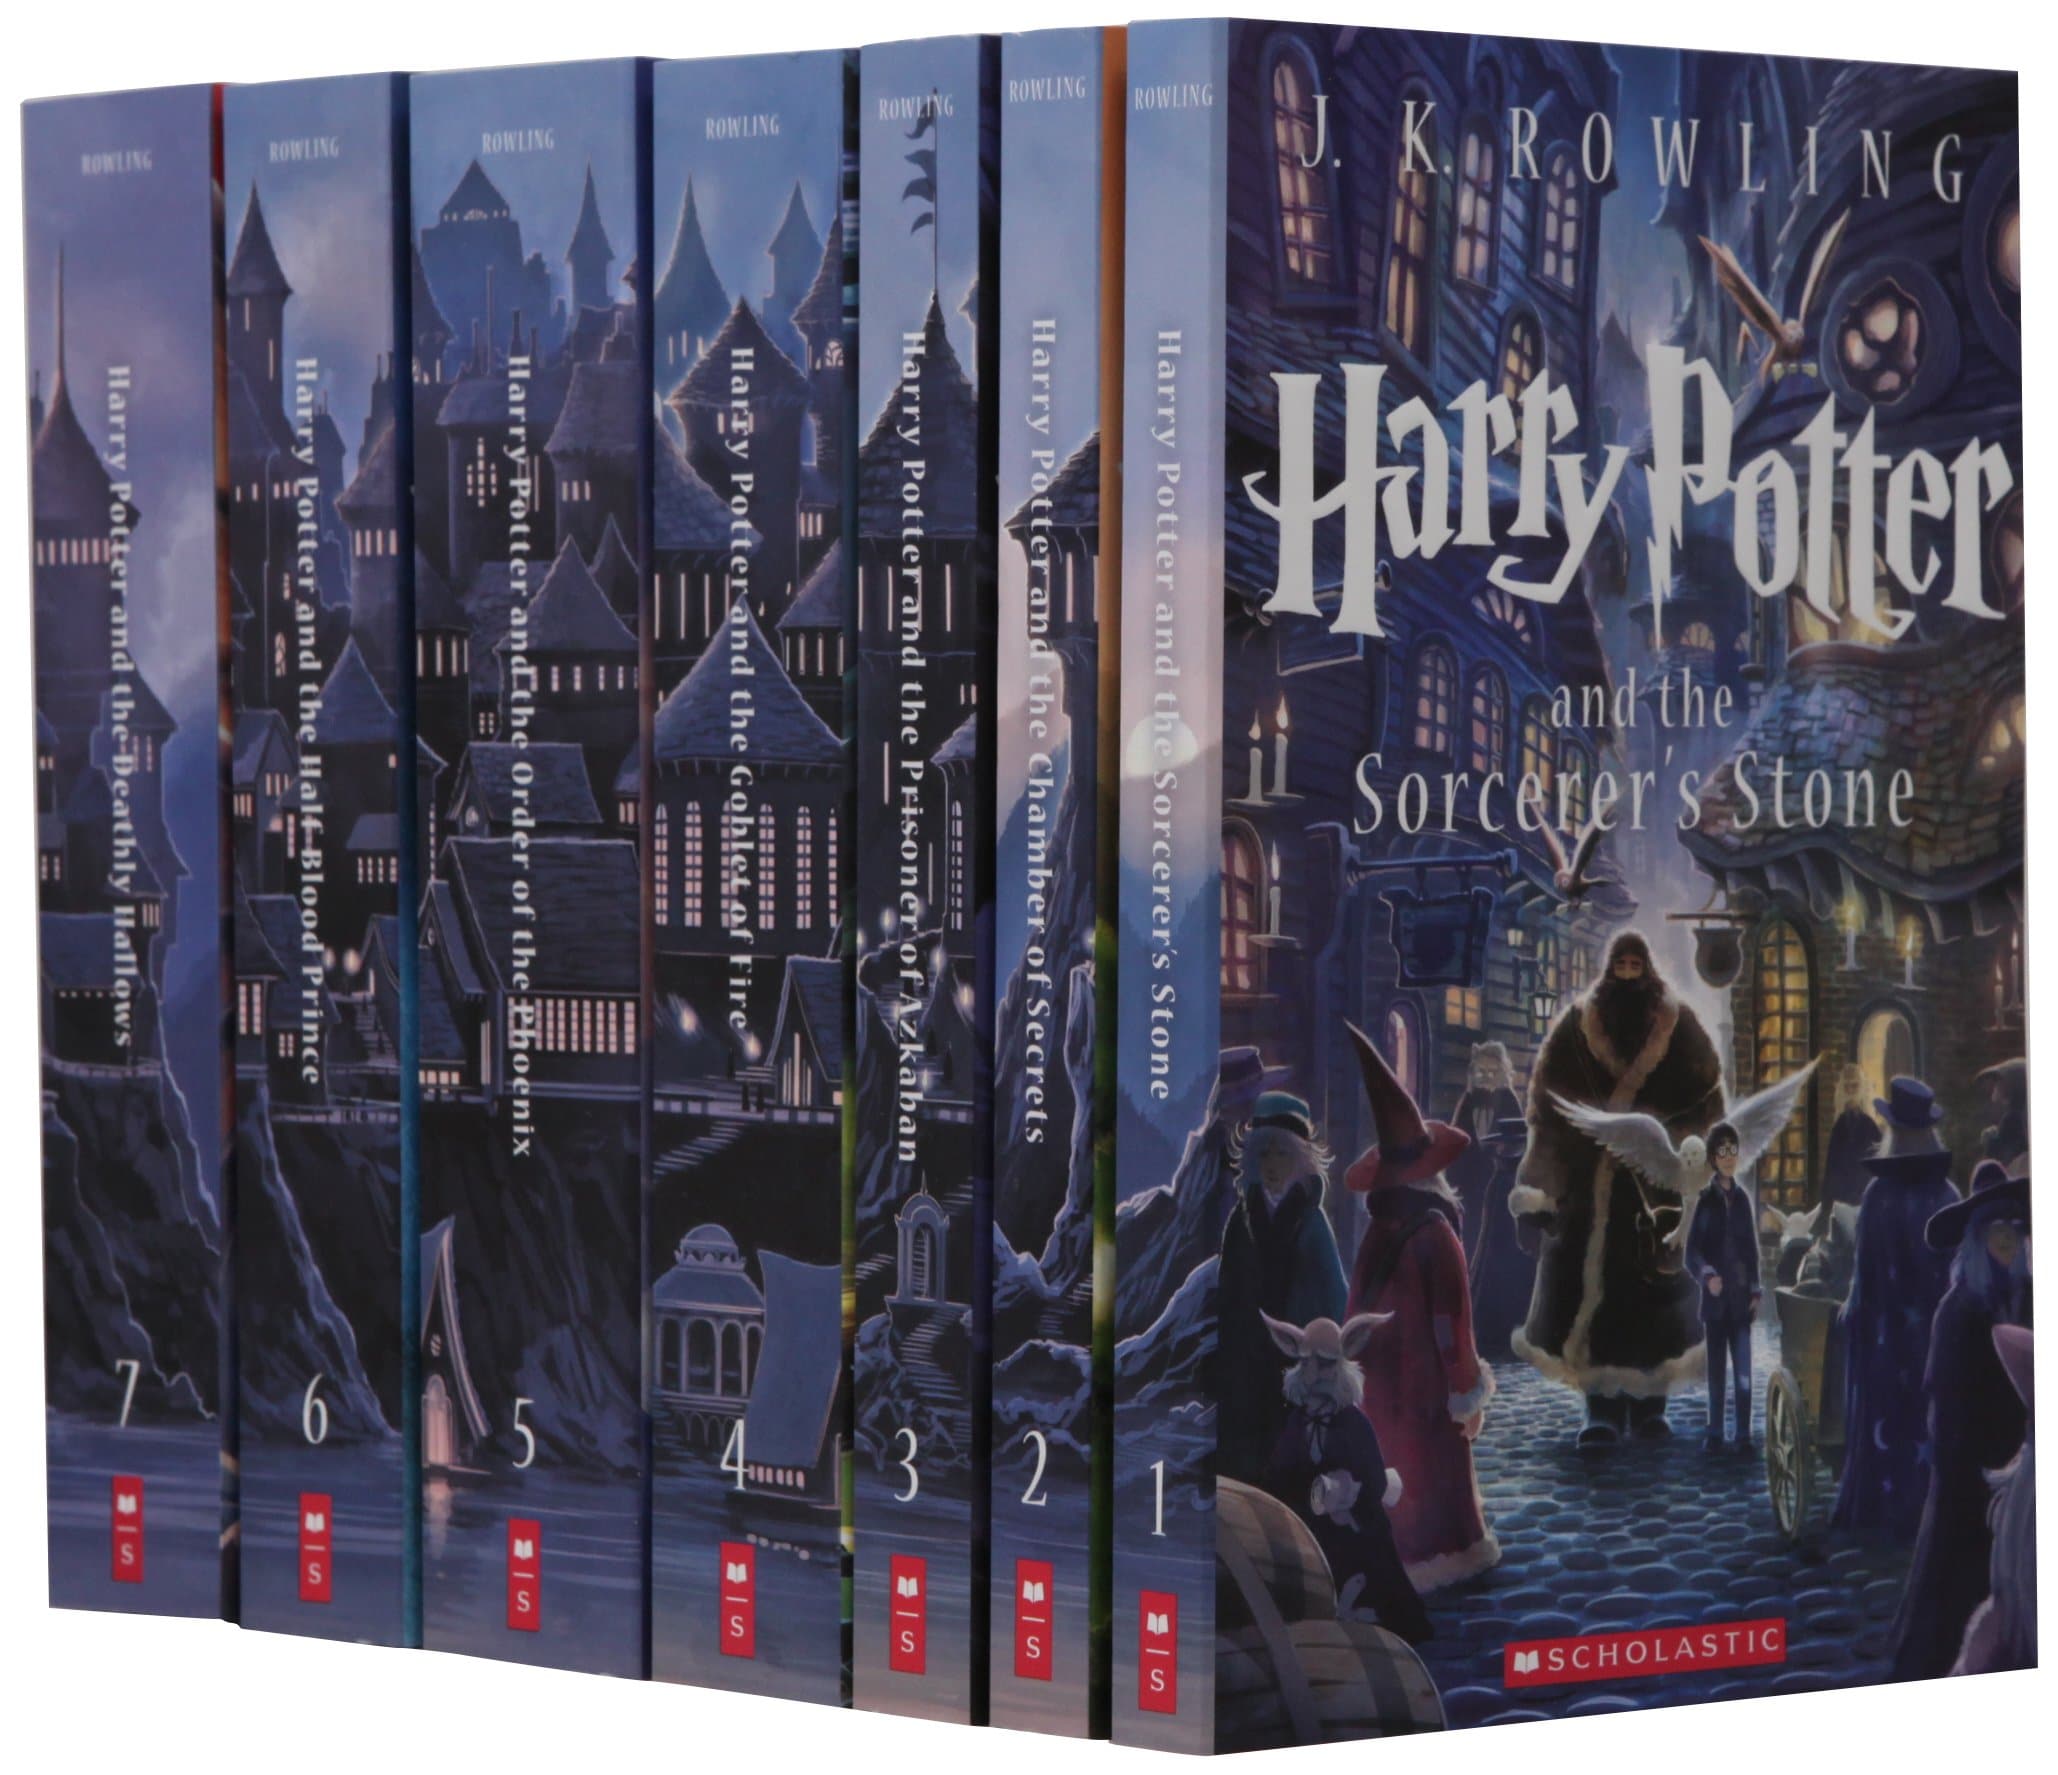 Les livres Harry Potter chez Scholastic, Inc. aux USA